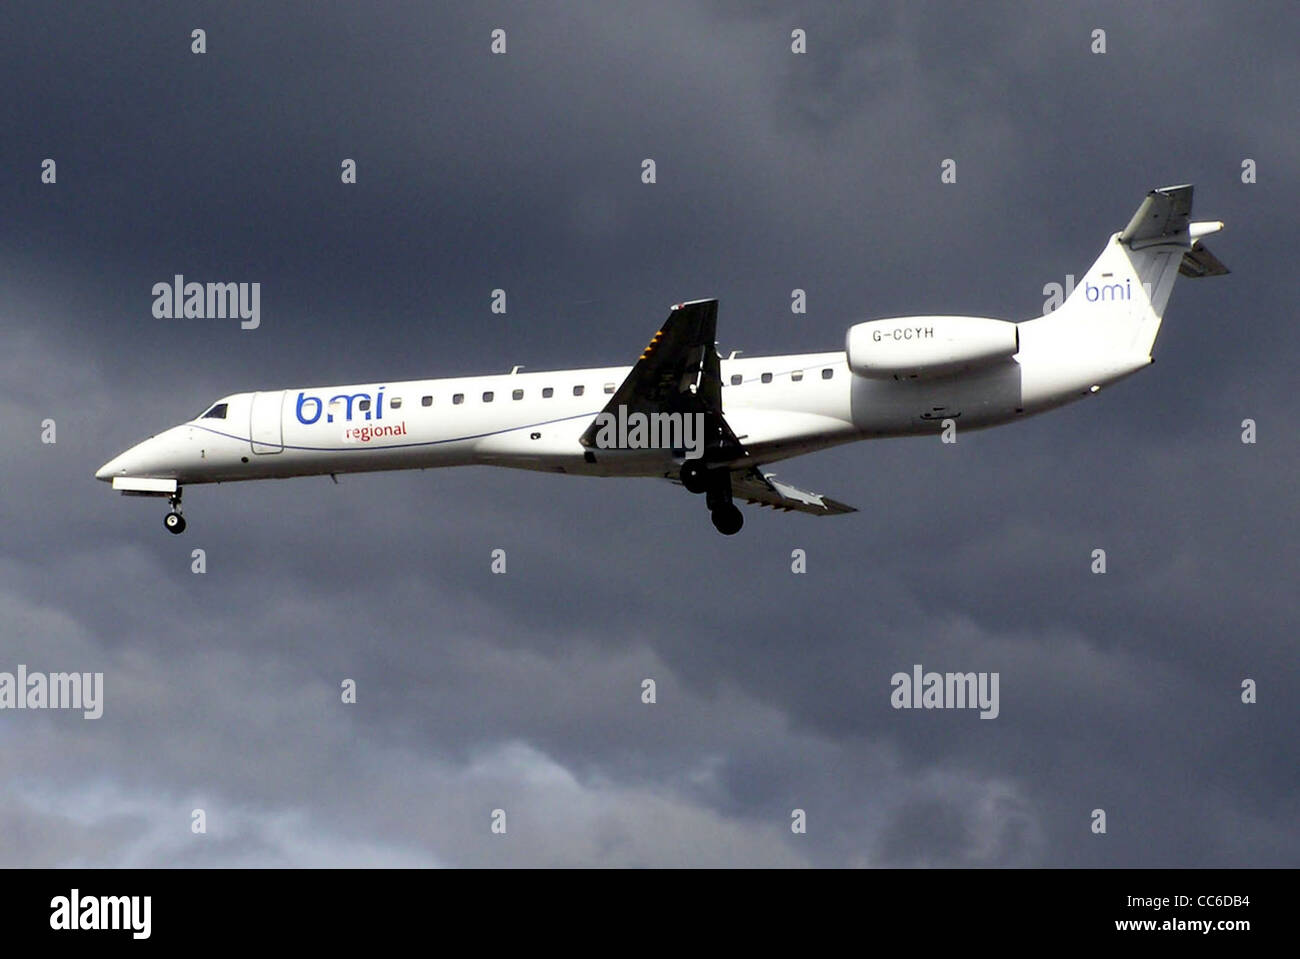 ERJ 145 (G-CCYH) bmi regional de l'atterrissage à l'aéroport de Heathrow, Londres. Banque D'Images